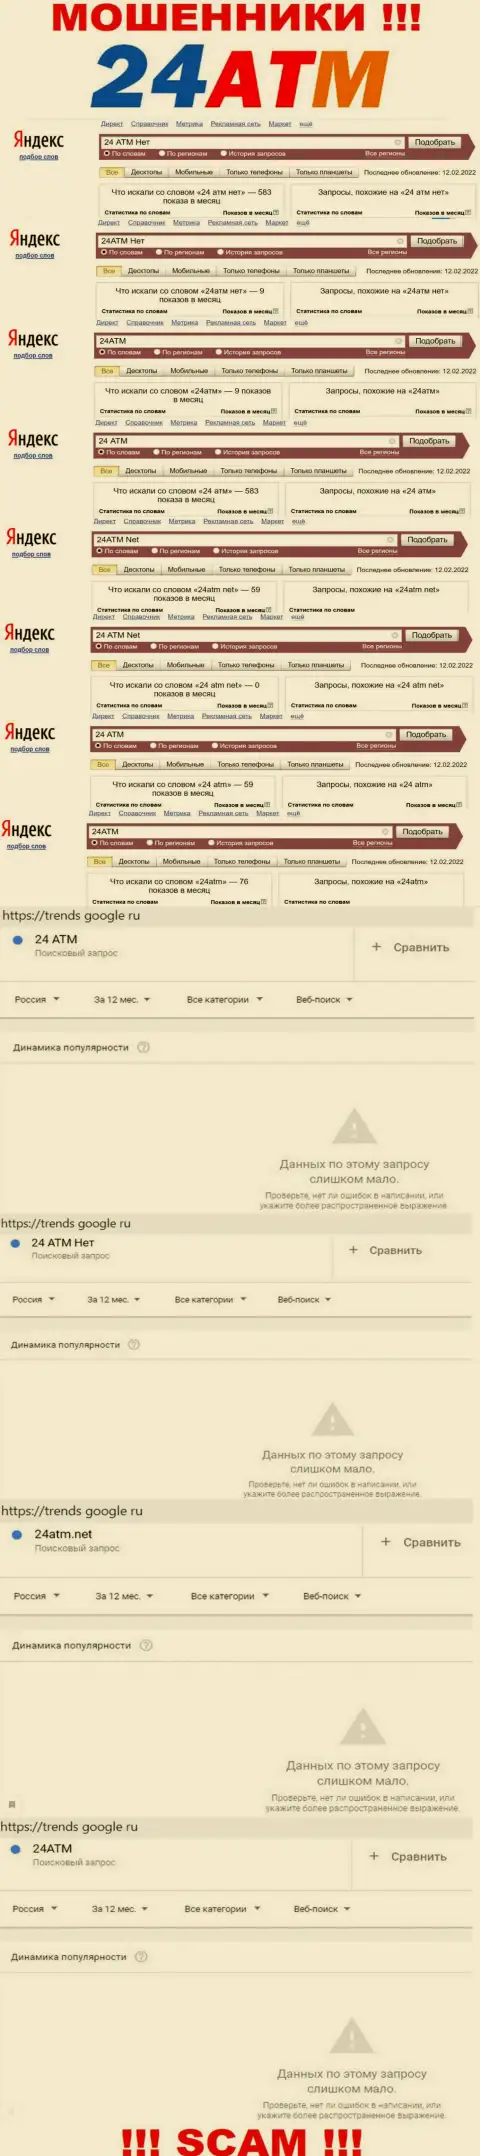 Количество online-запросов в поисковиках всемирной интернет сети по бренду шулеров 24ATM Net